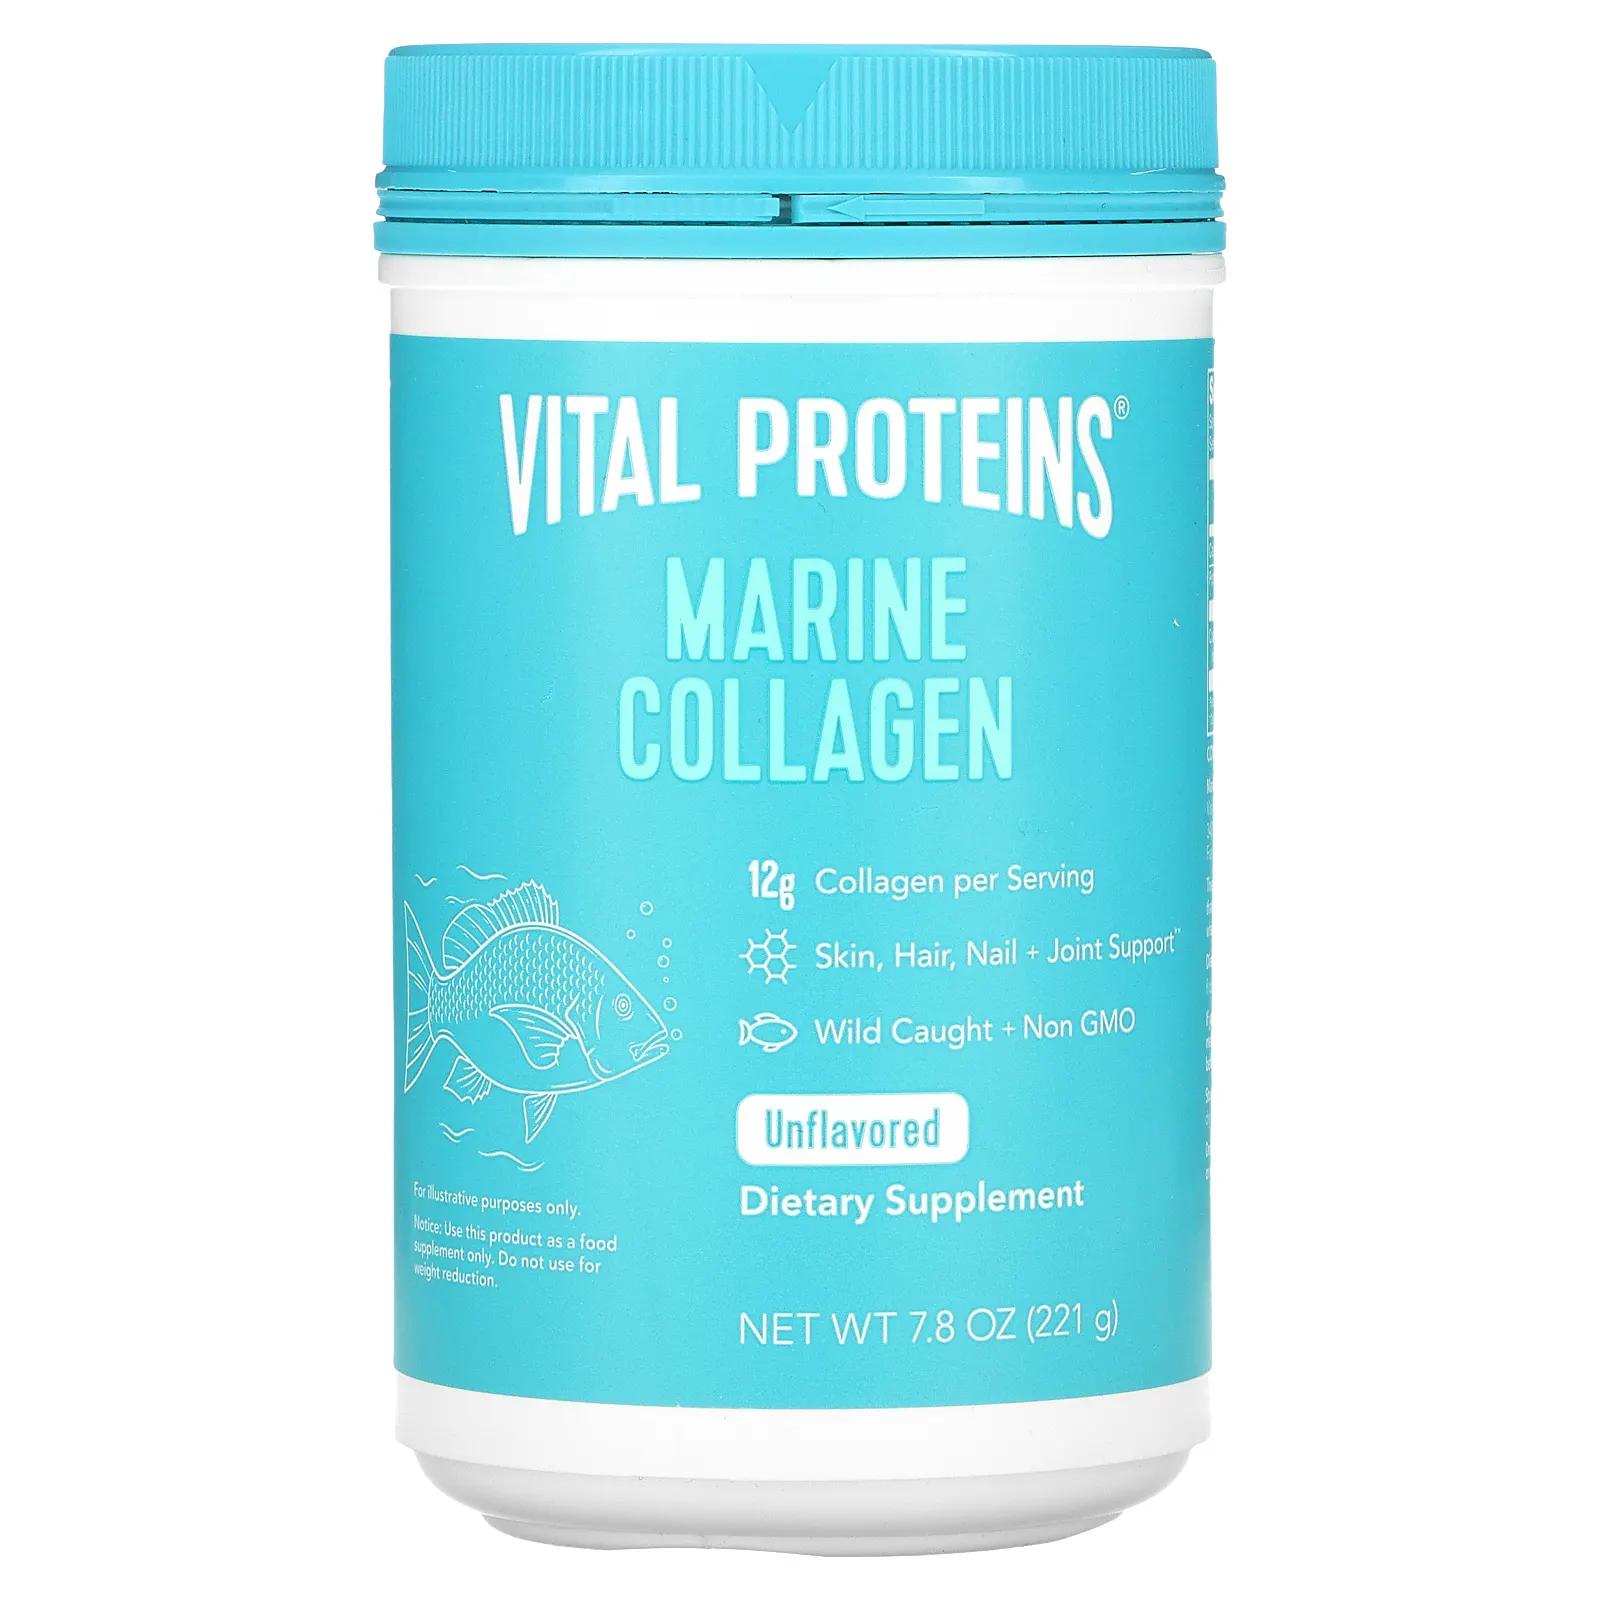 Vital Proteins Морской коллаген Выловлено в диких условиях Без ароматизаторов 7,8 унц. (221 г) vital proteins морской коллаген из дикой рыбы без добавок 221 г 7 8 унции